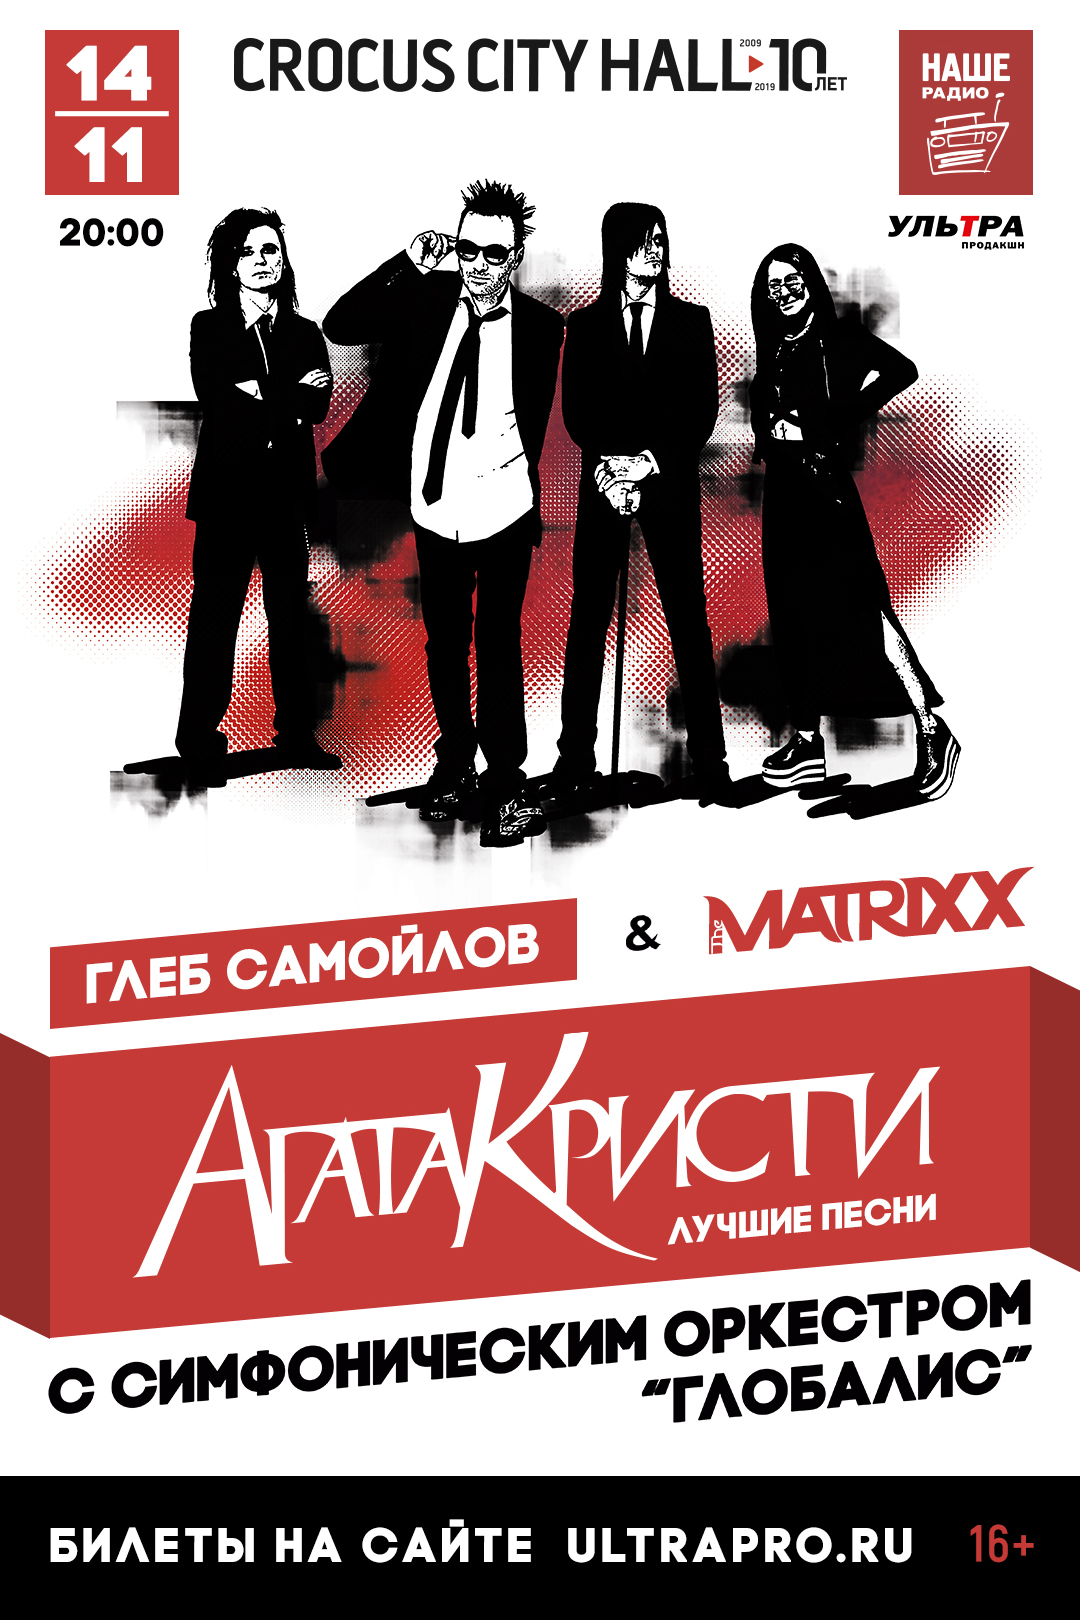 Концерт Глеба Самойлова The Matrixxx, Агата Кристи